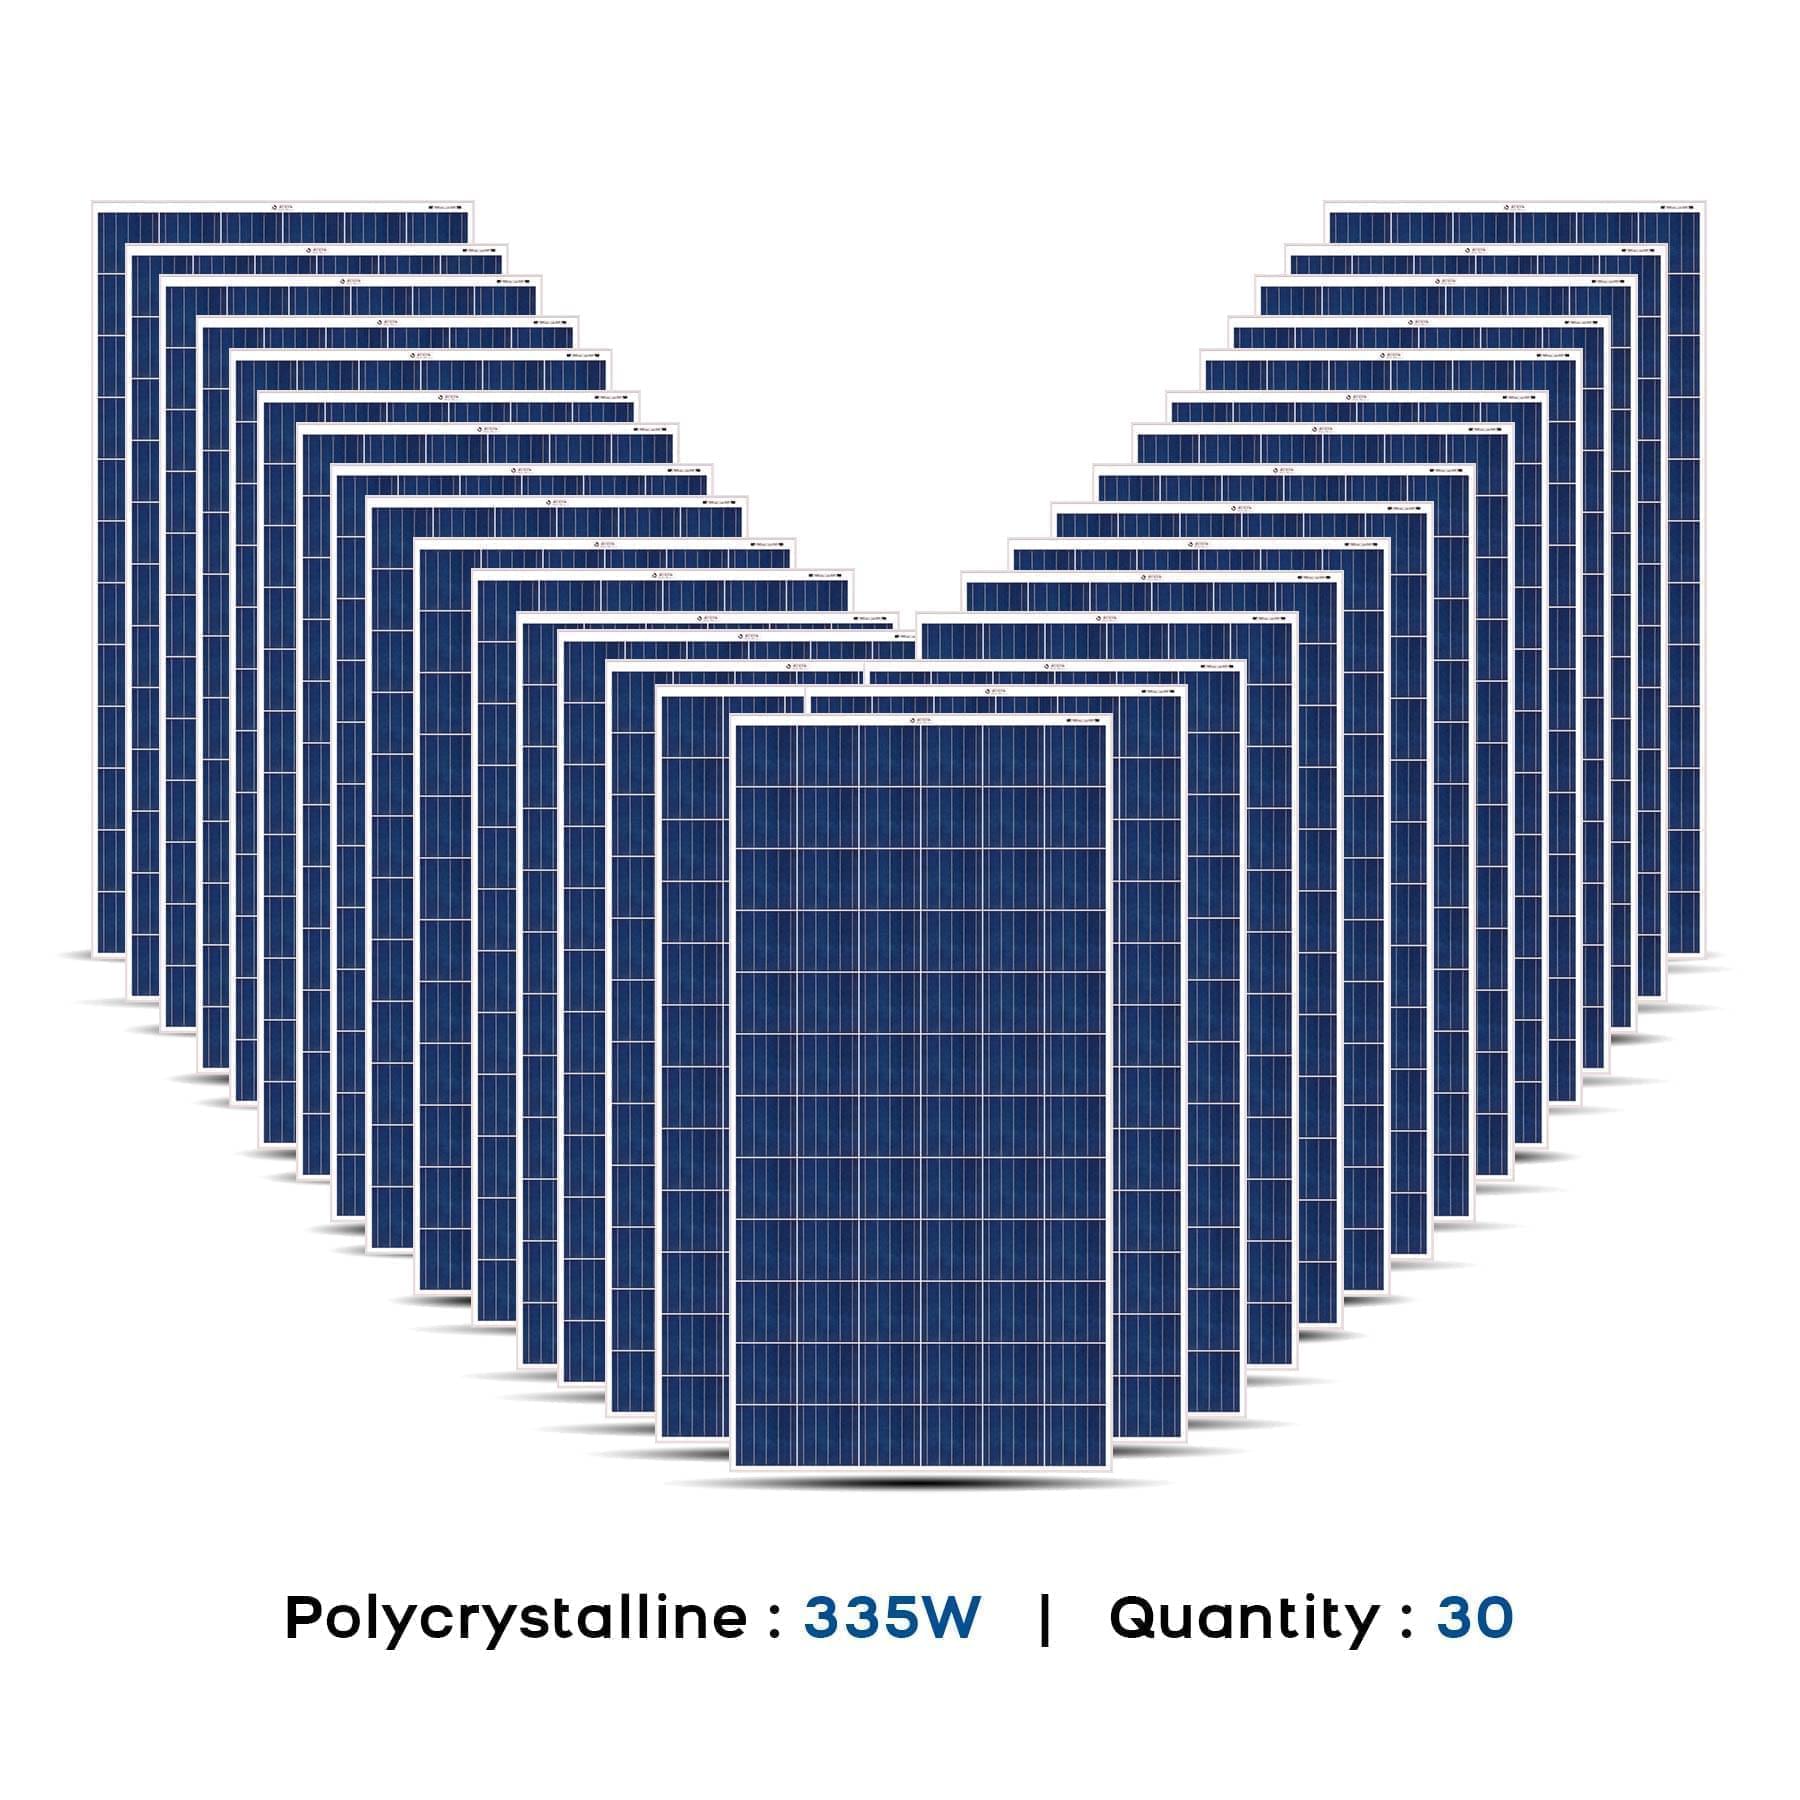 10 Kw solar panel